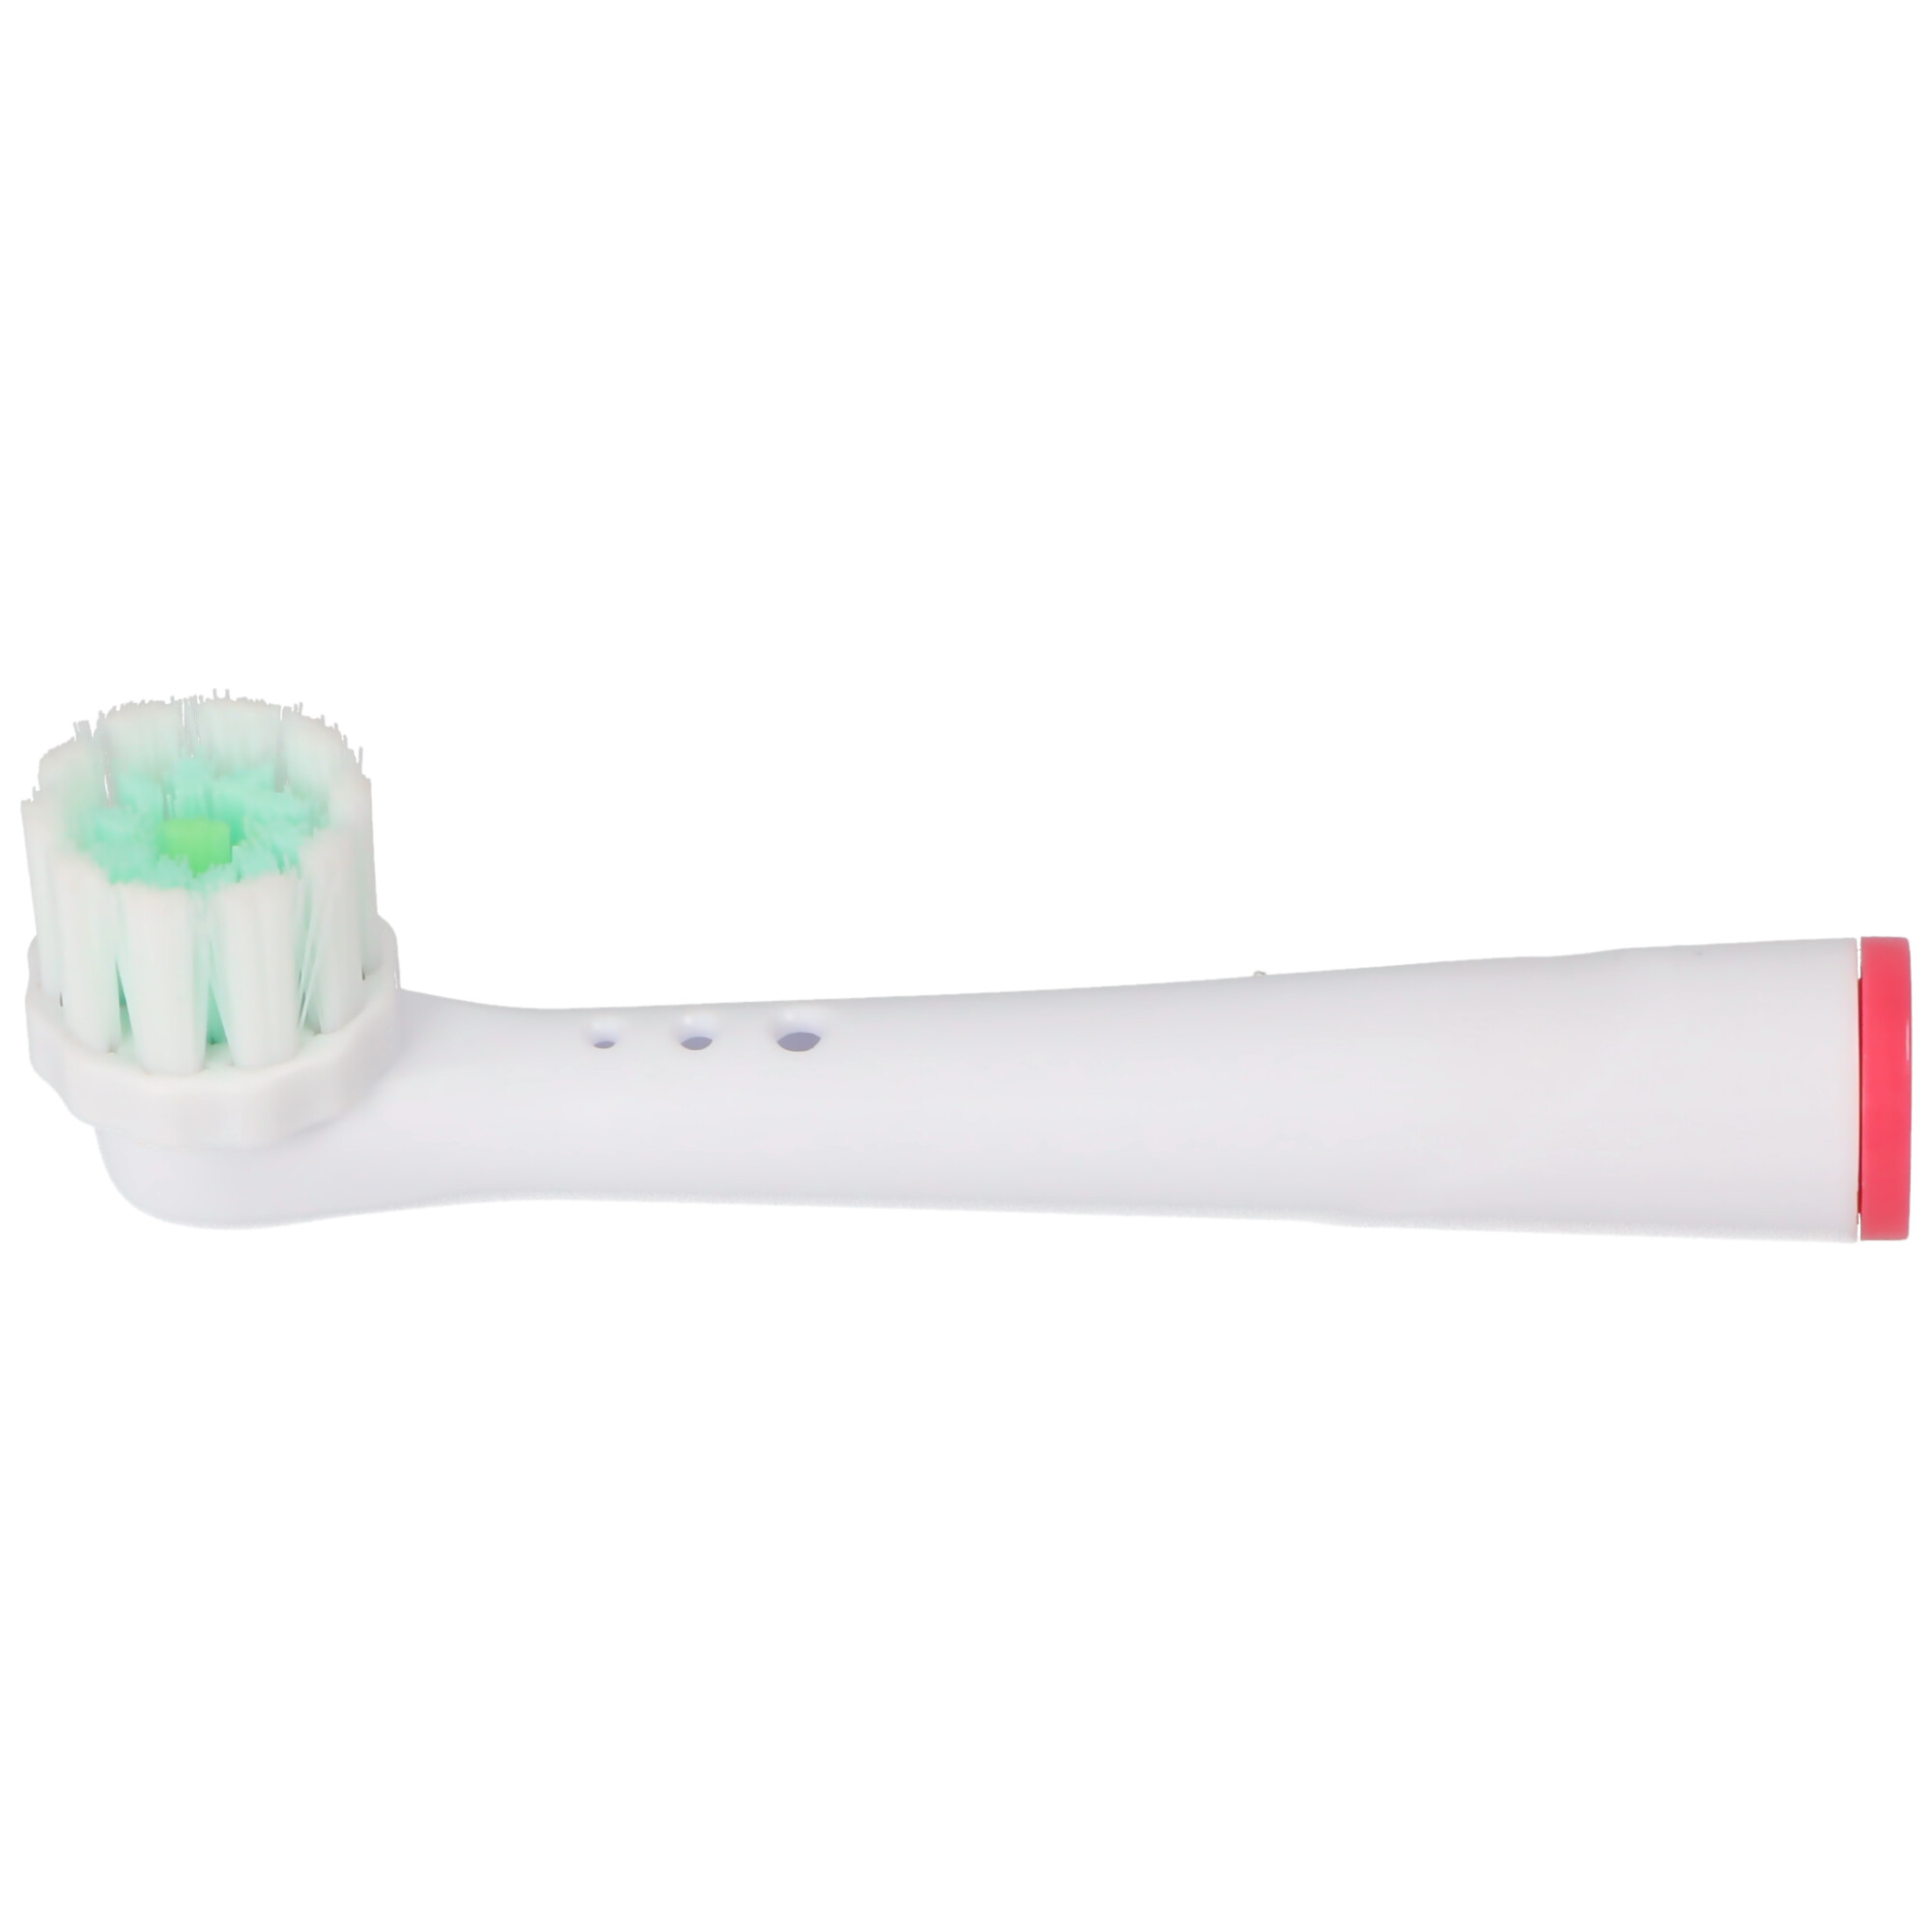 4 Stück Gum Care Ersatz-Zahnbürstenkopf für elektrische Zahnbürsten von Oral-B, passend z.B. für Oral-B D10, D12, D16, D12 und viele andere Modelle von Oral-B